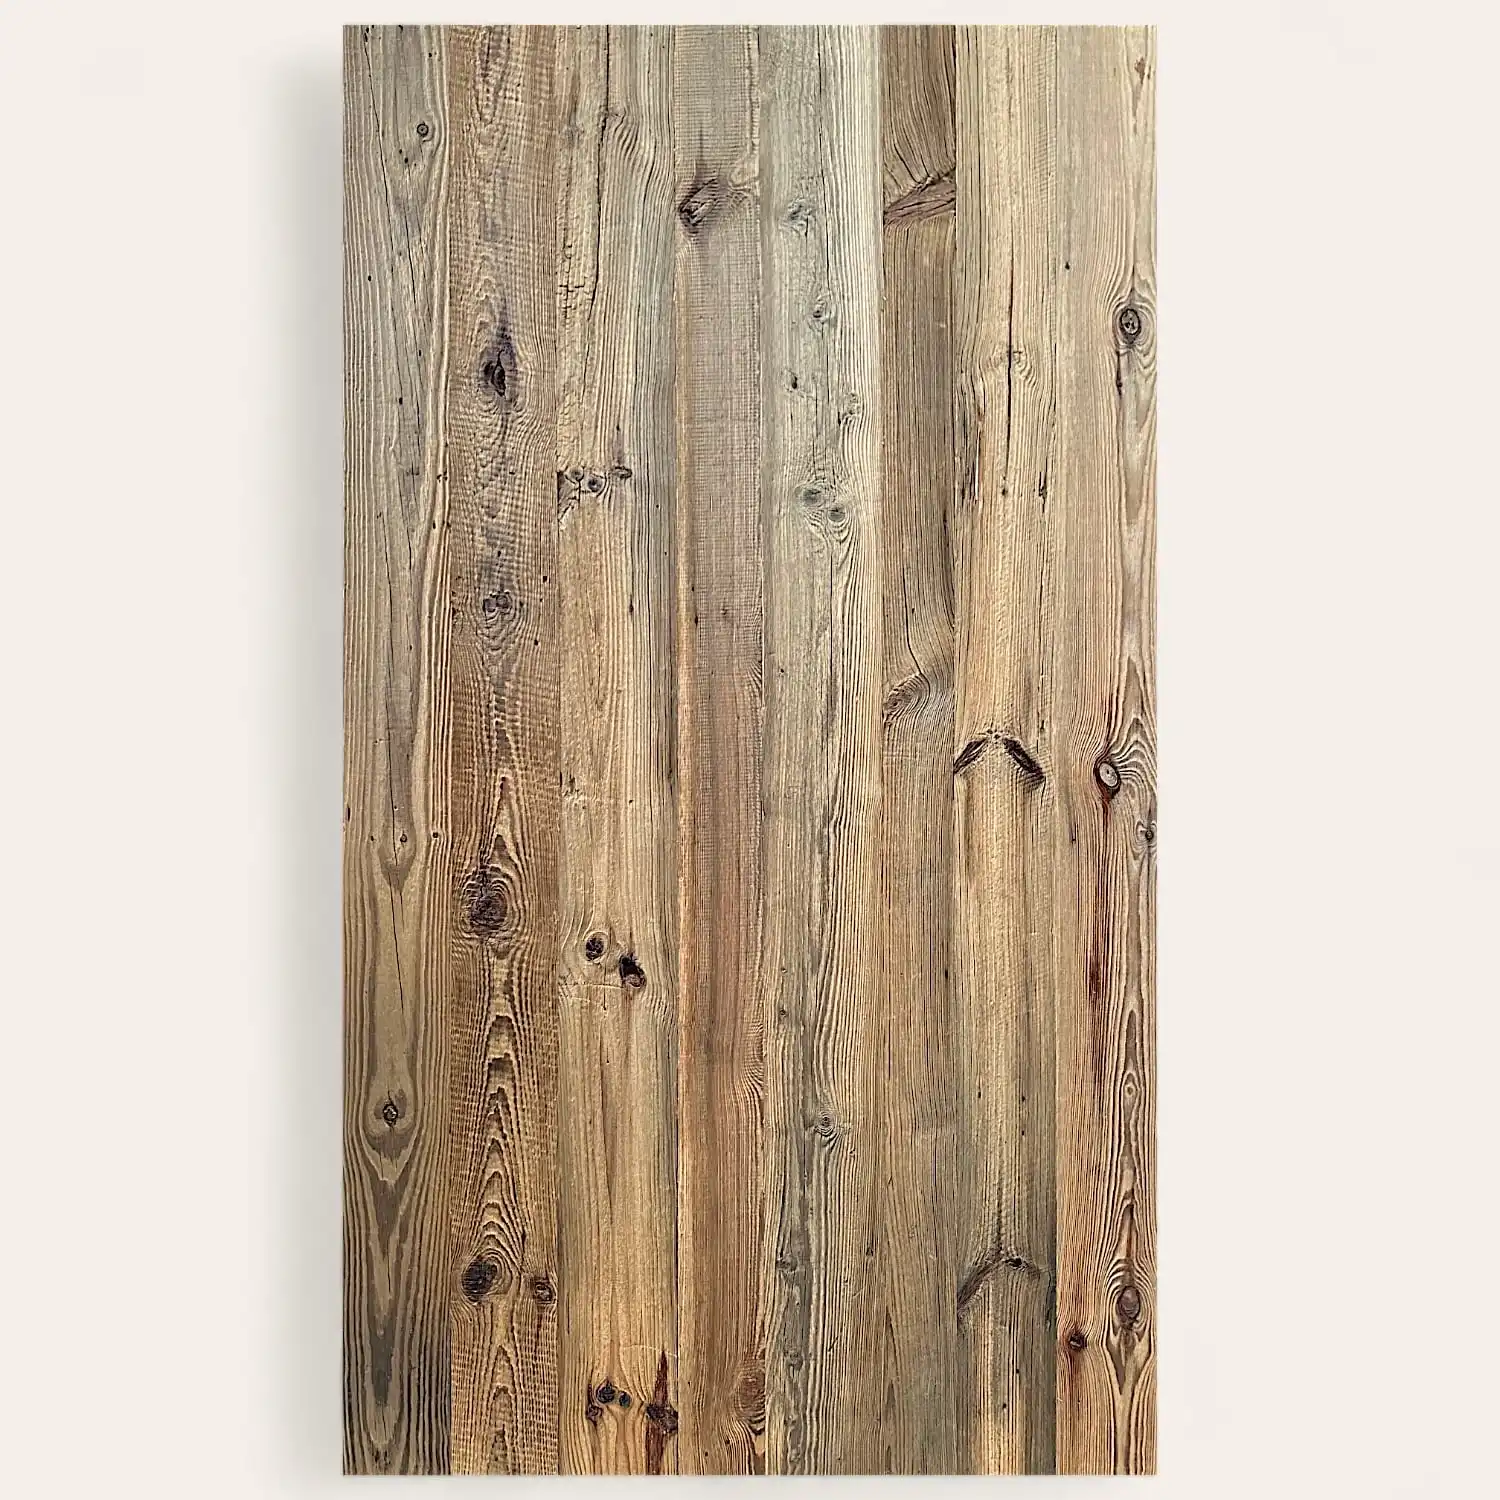  Texture de planche de bois verticale avec motifs de grain naturel et nœuds, utilisée comme arrière-plan ou panneau dans un design de panneau 5 plis. 